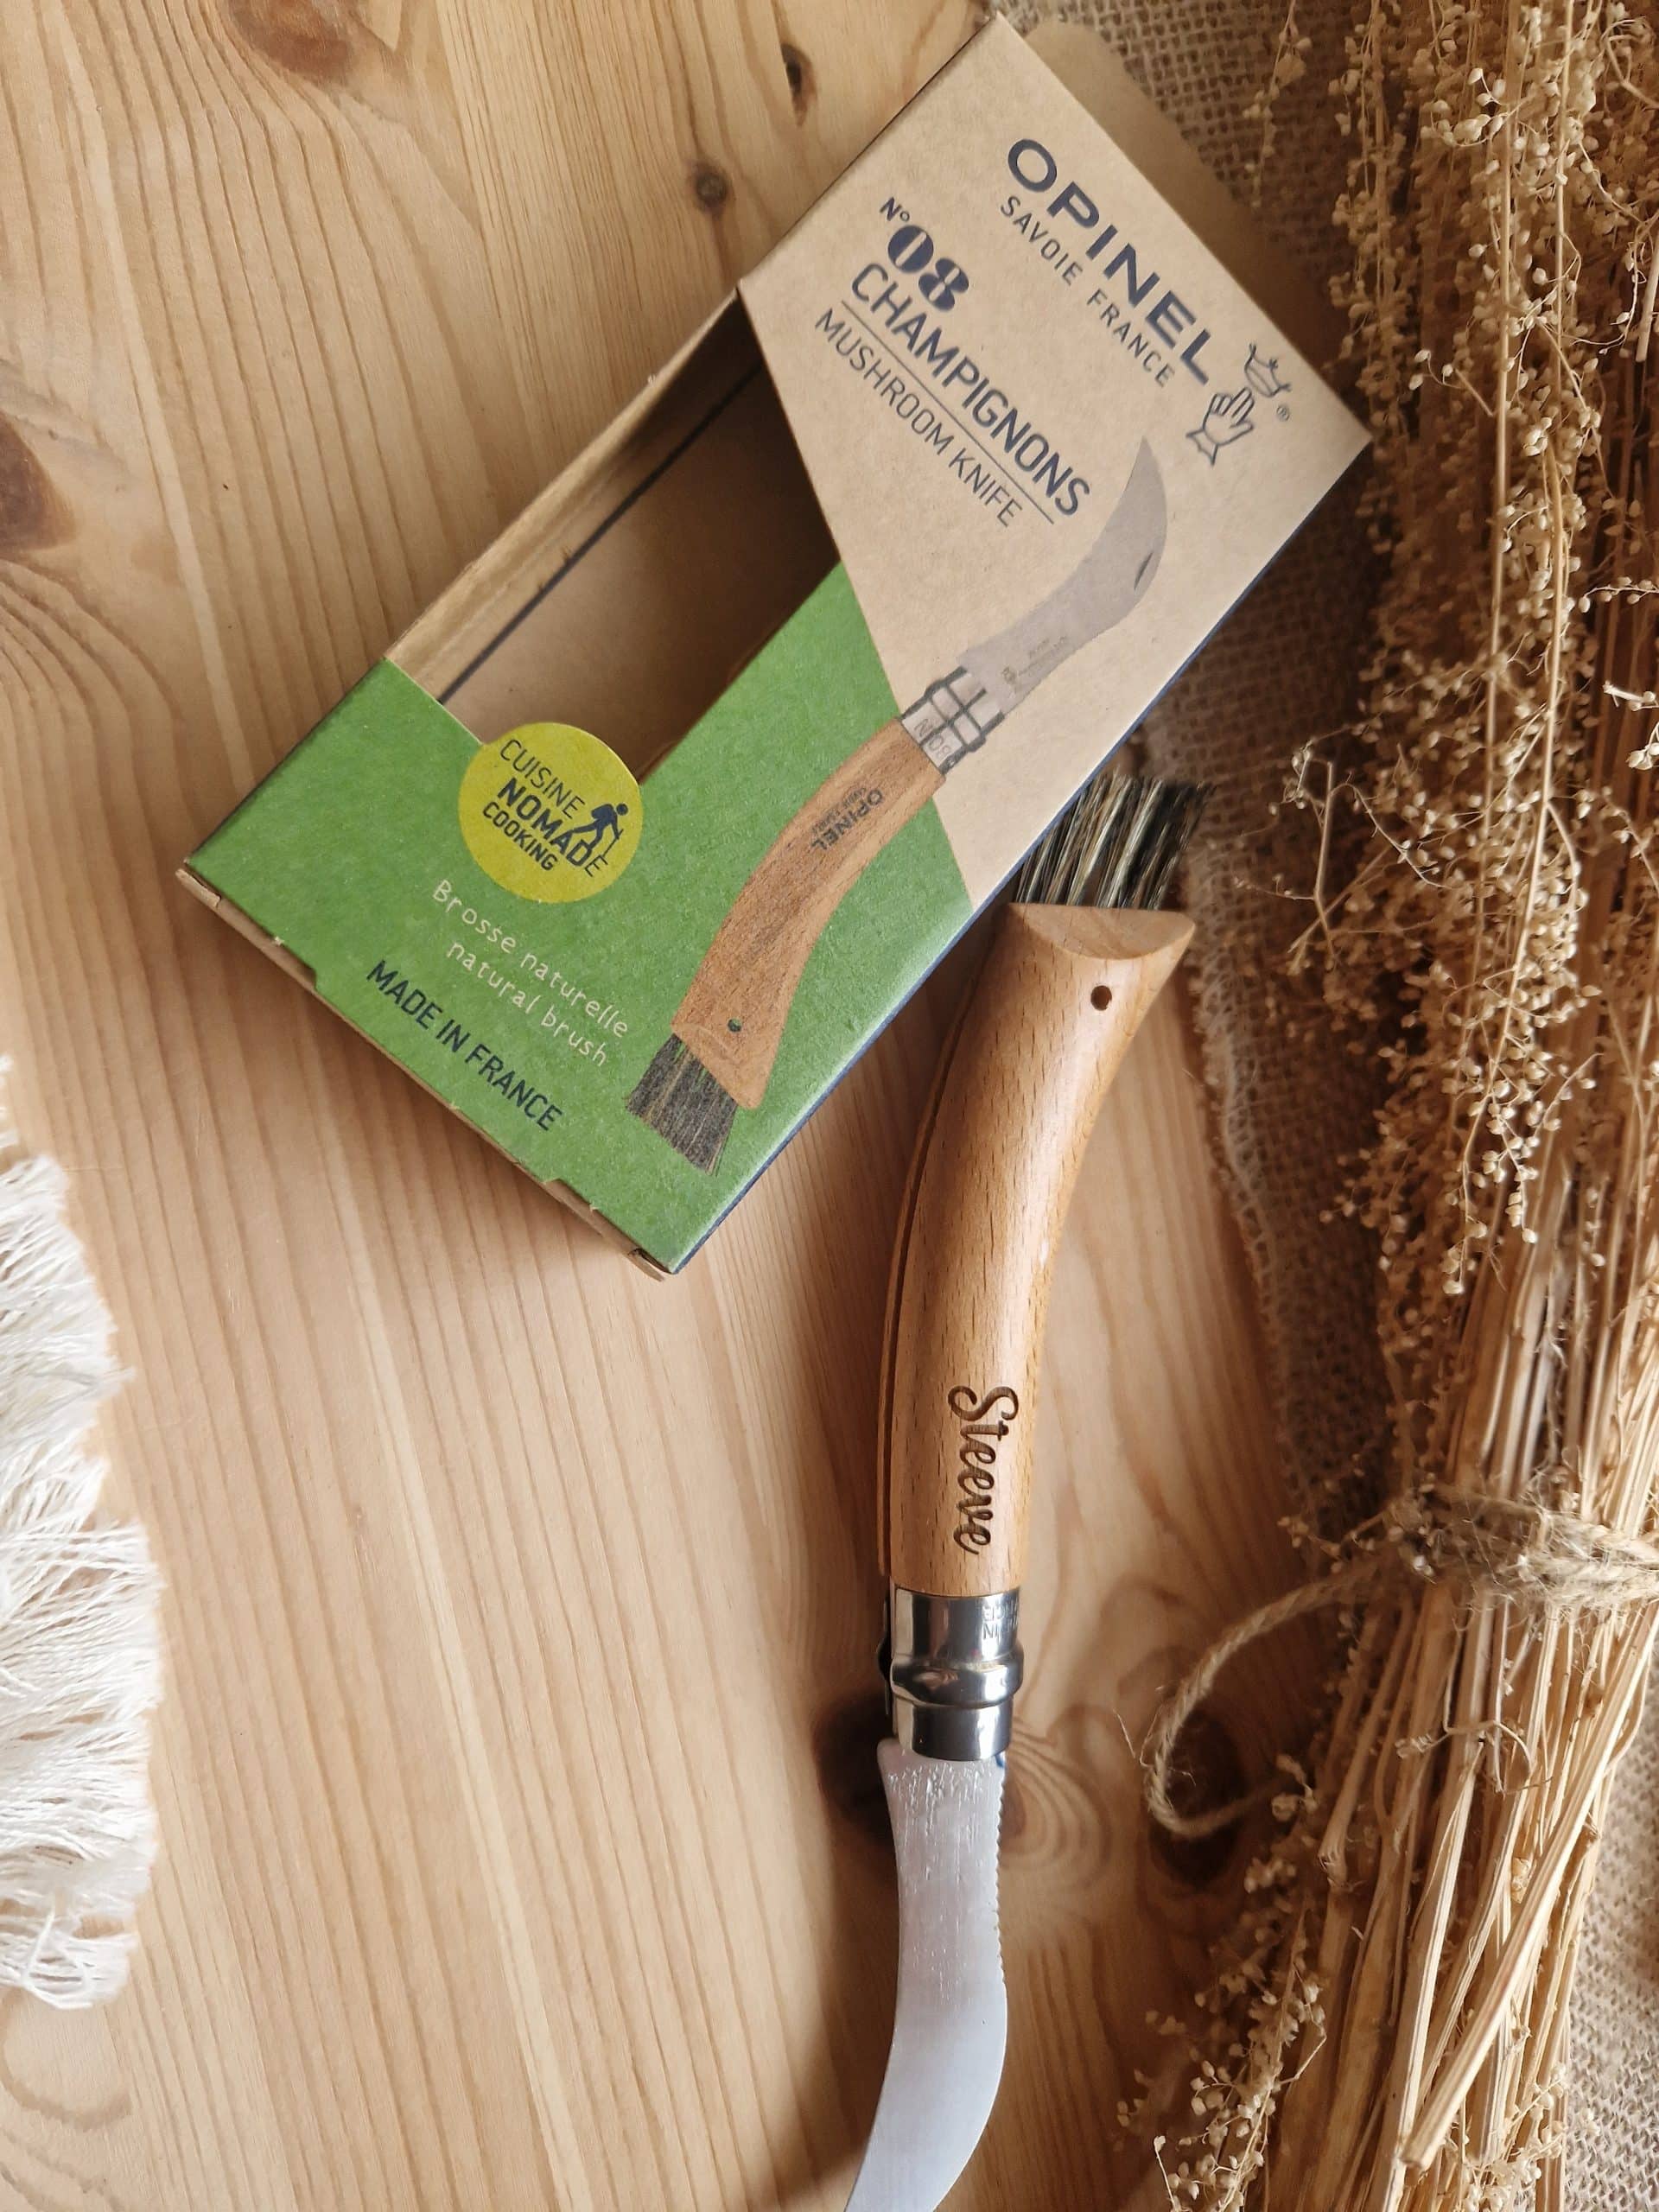 Couteau à champignons OPINEL - Le Colibri, boutique en ligne